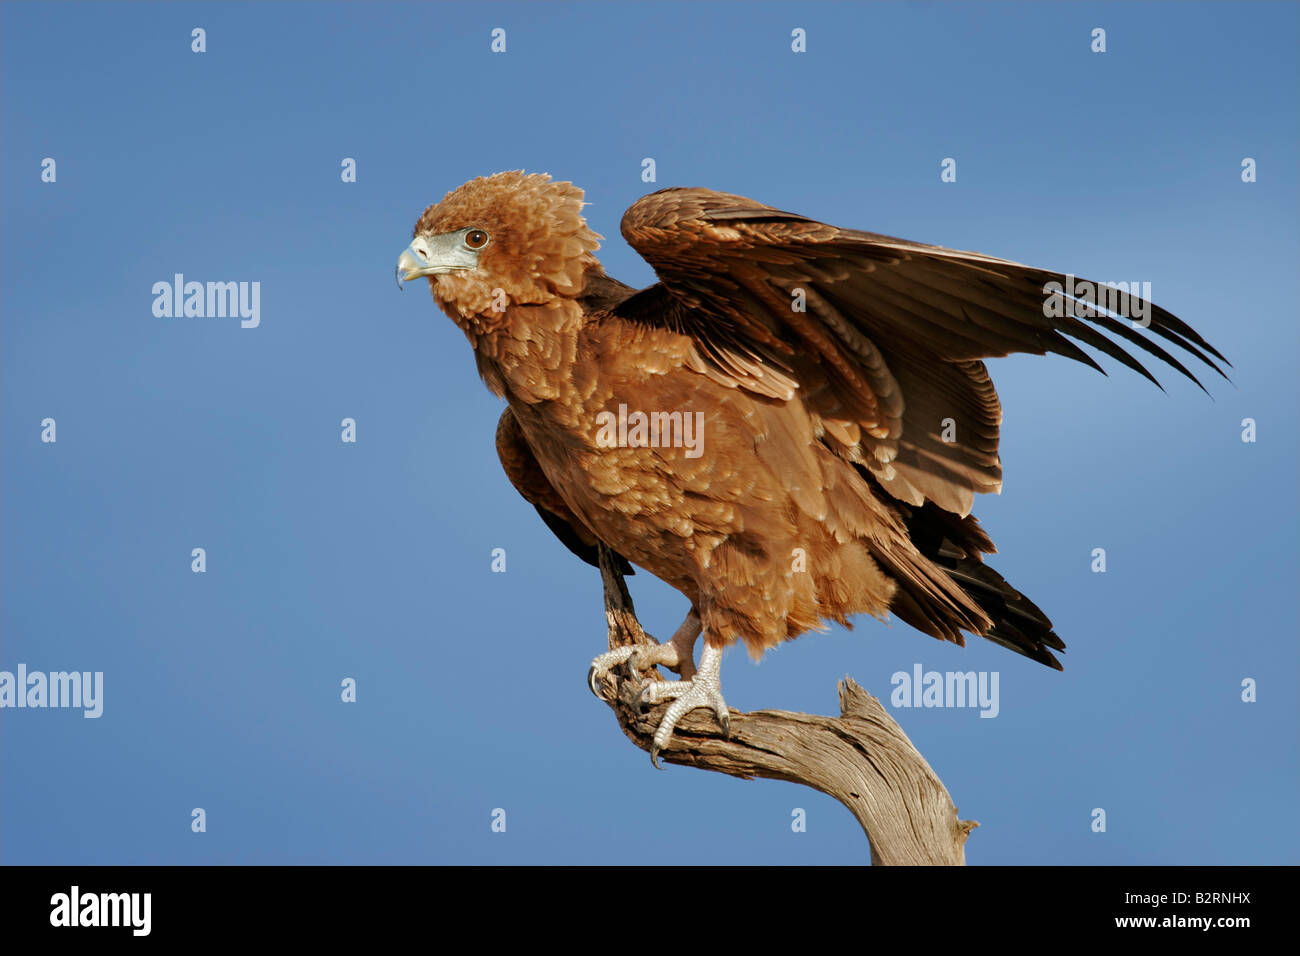 Adler Figur mit ausgebreiteten Flügeln Raubvogel Seeadler Falke bronziert 